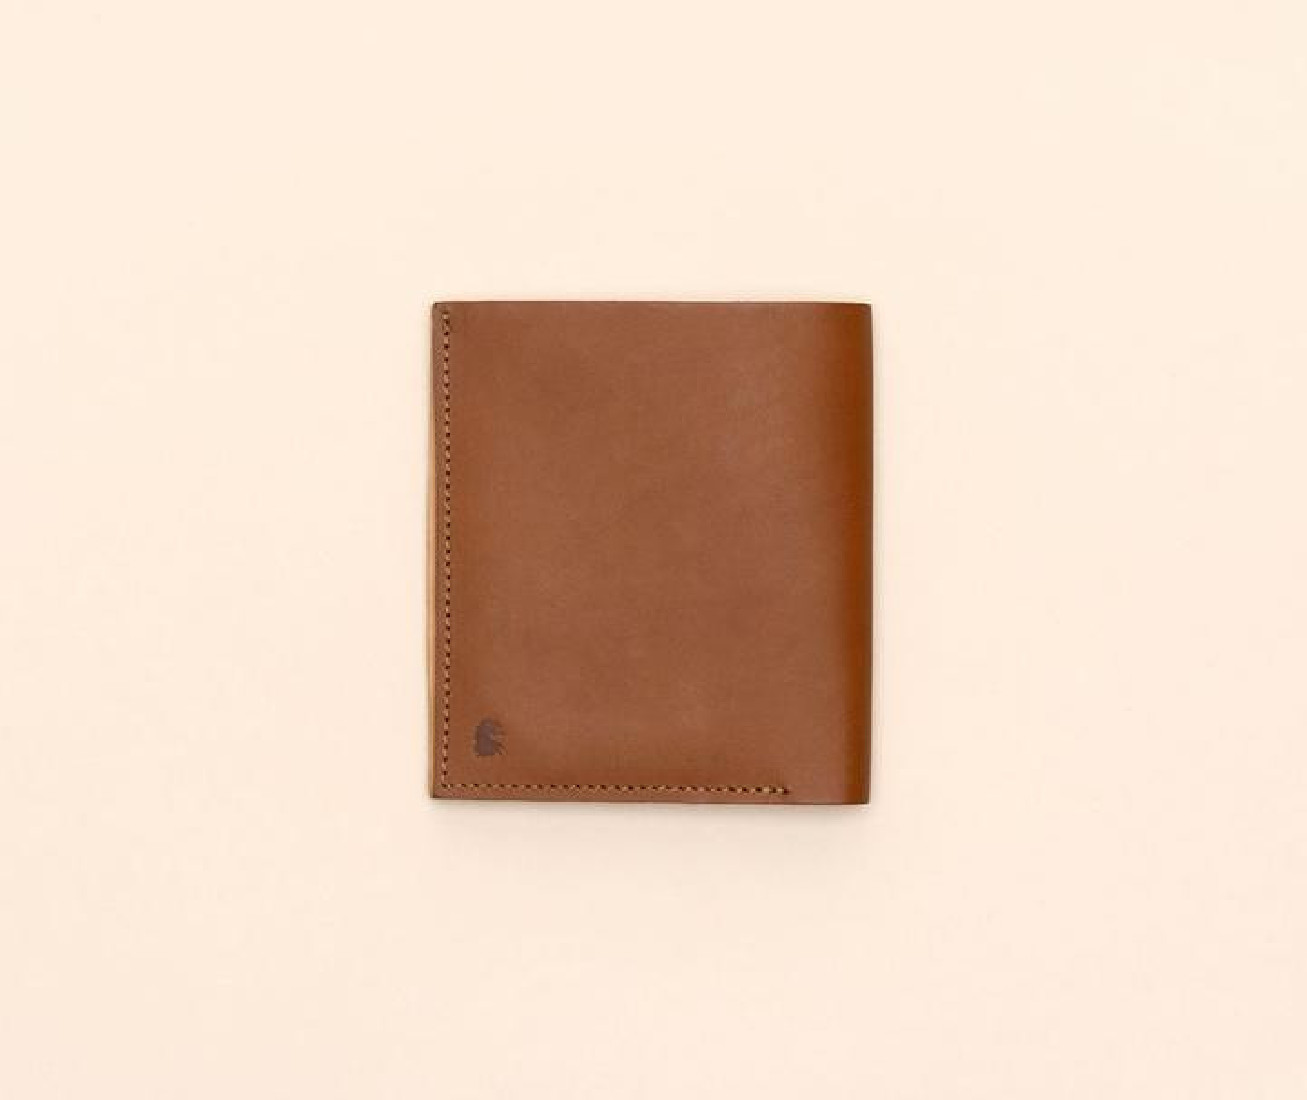 Paper Republic the square | leather wallet cognac